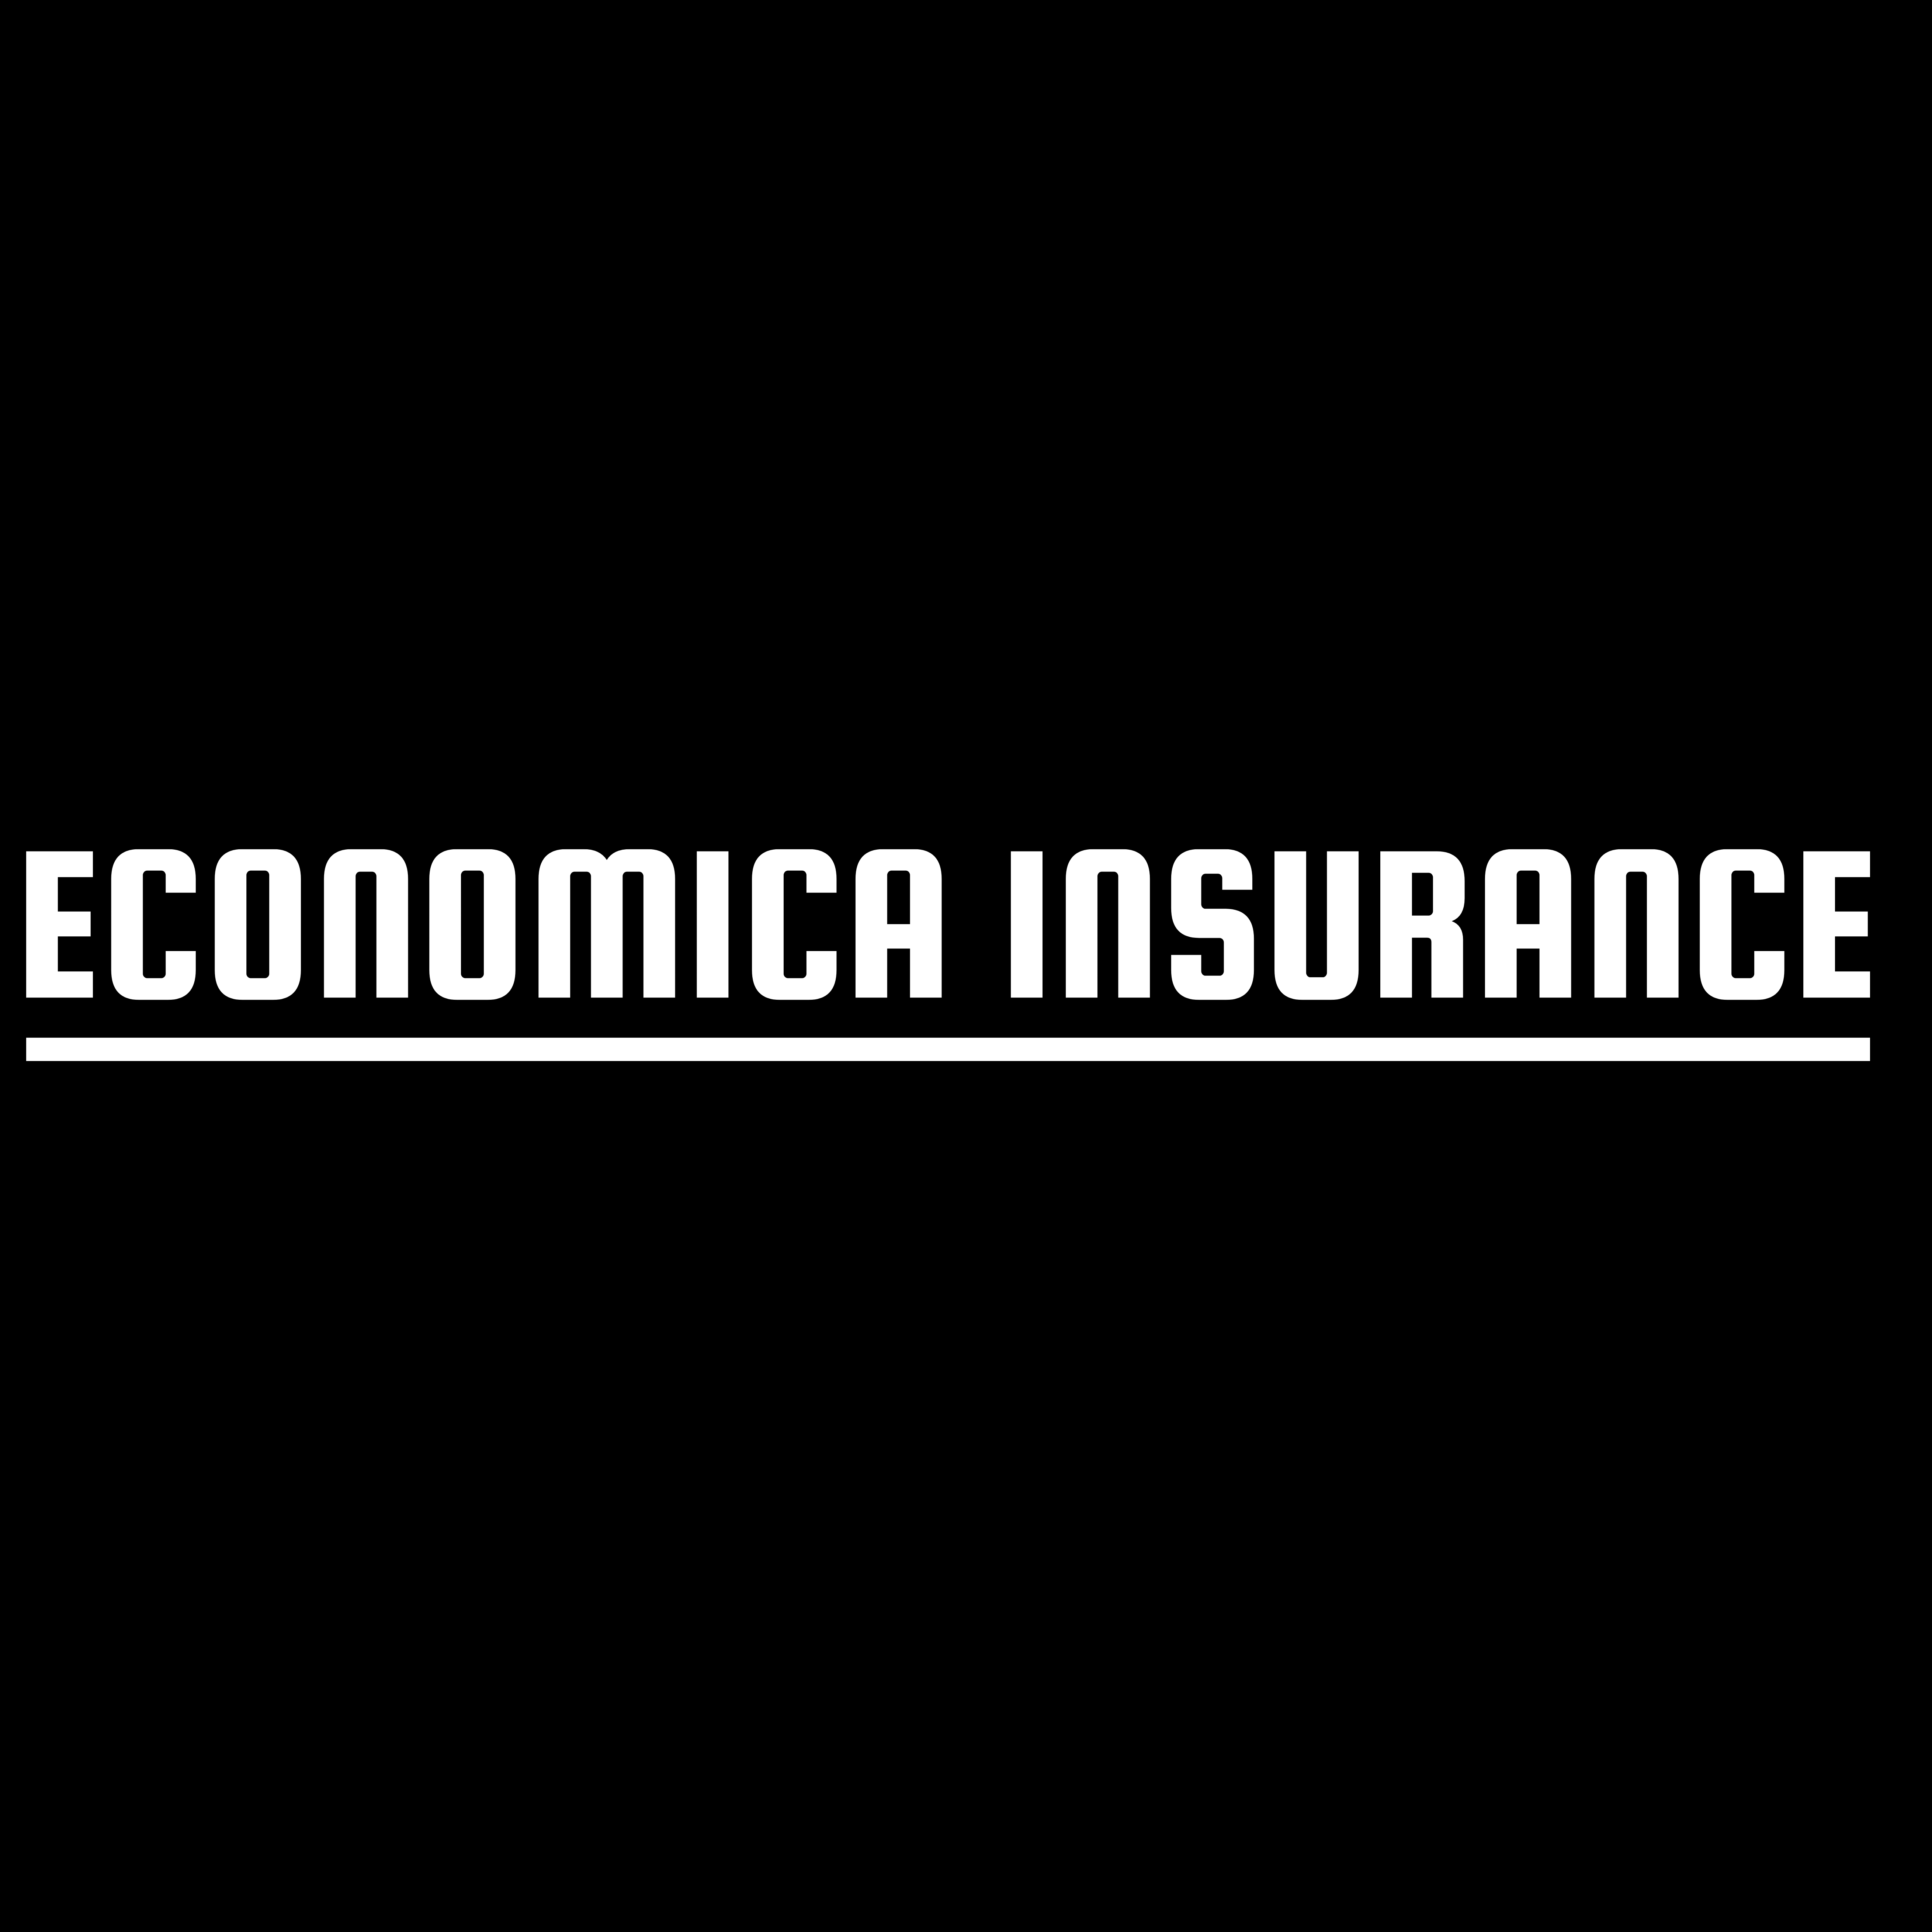 Economica Insurance